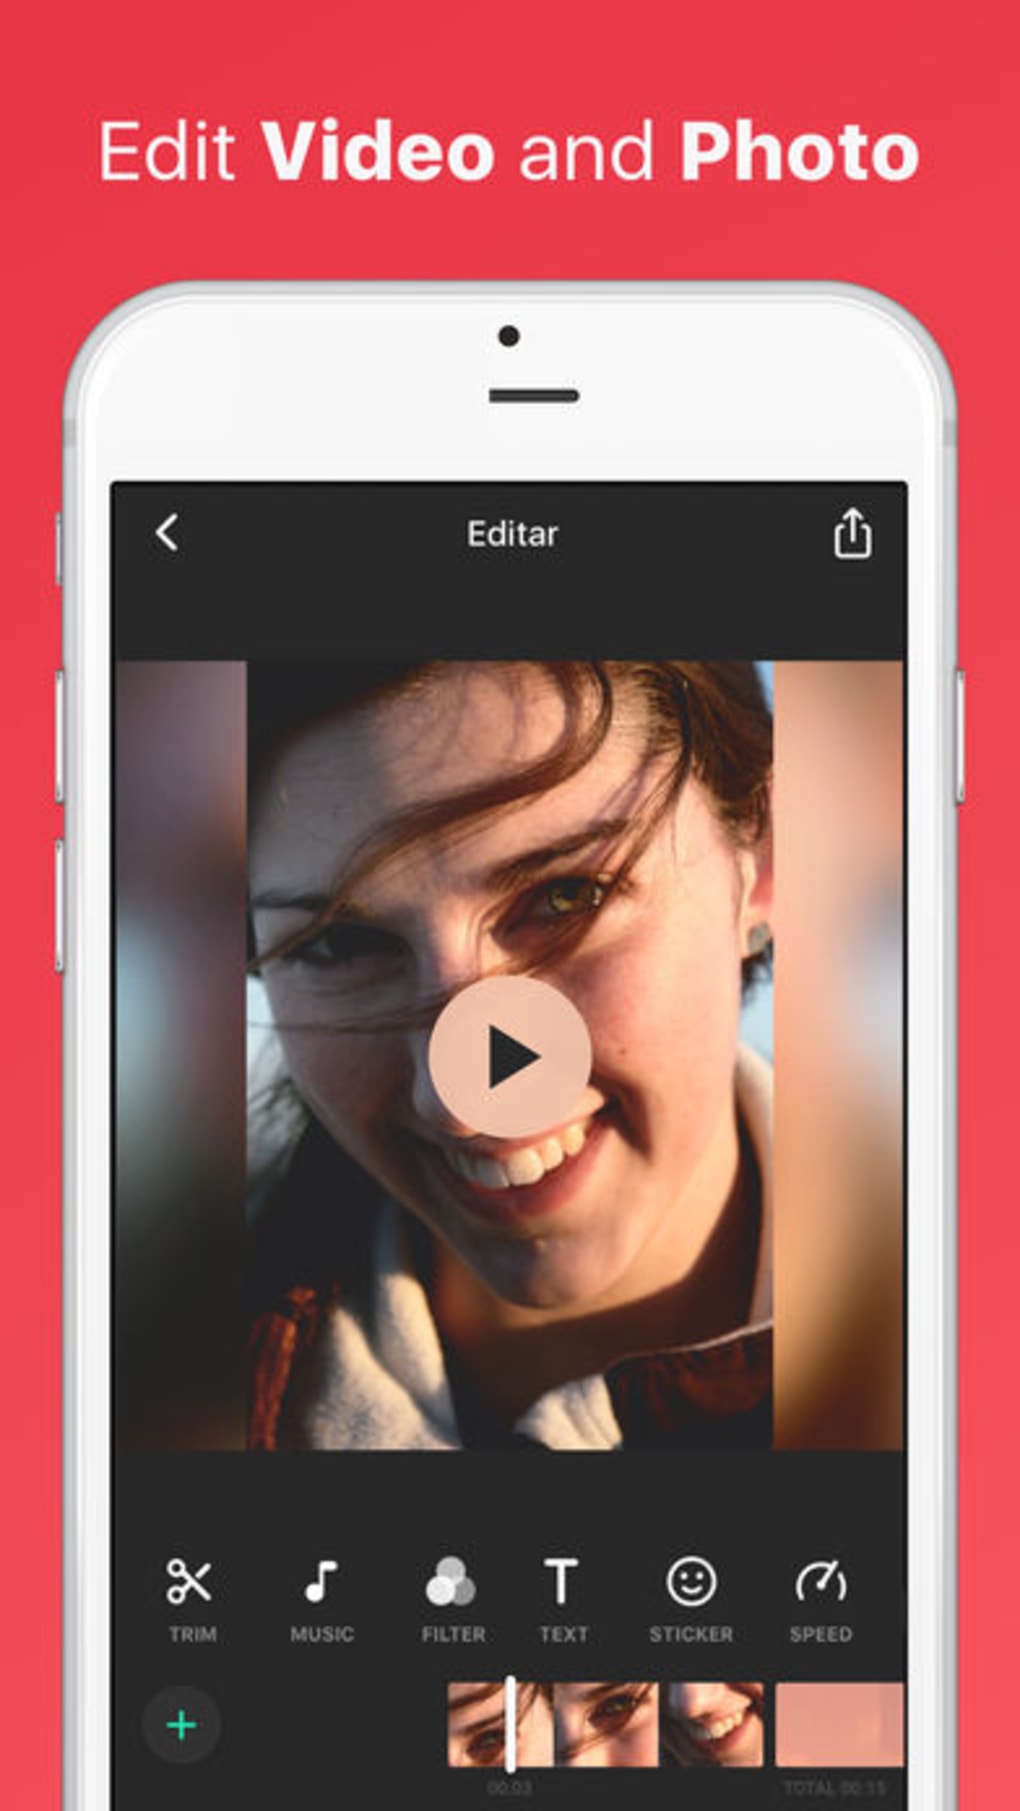 inshot video editor app